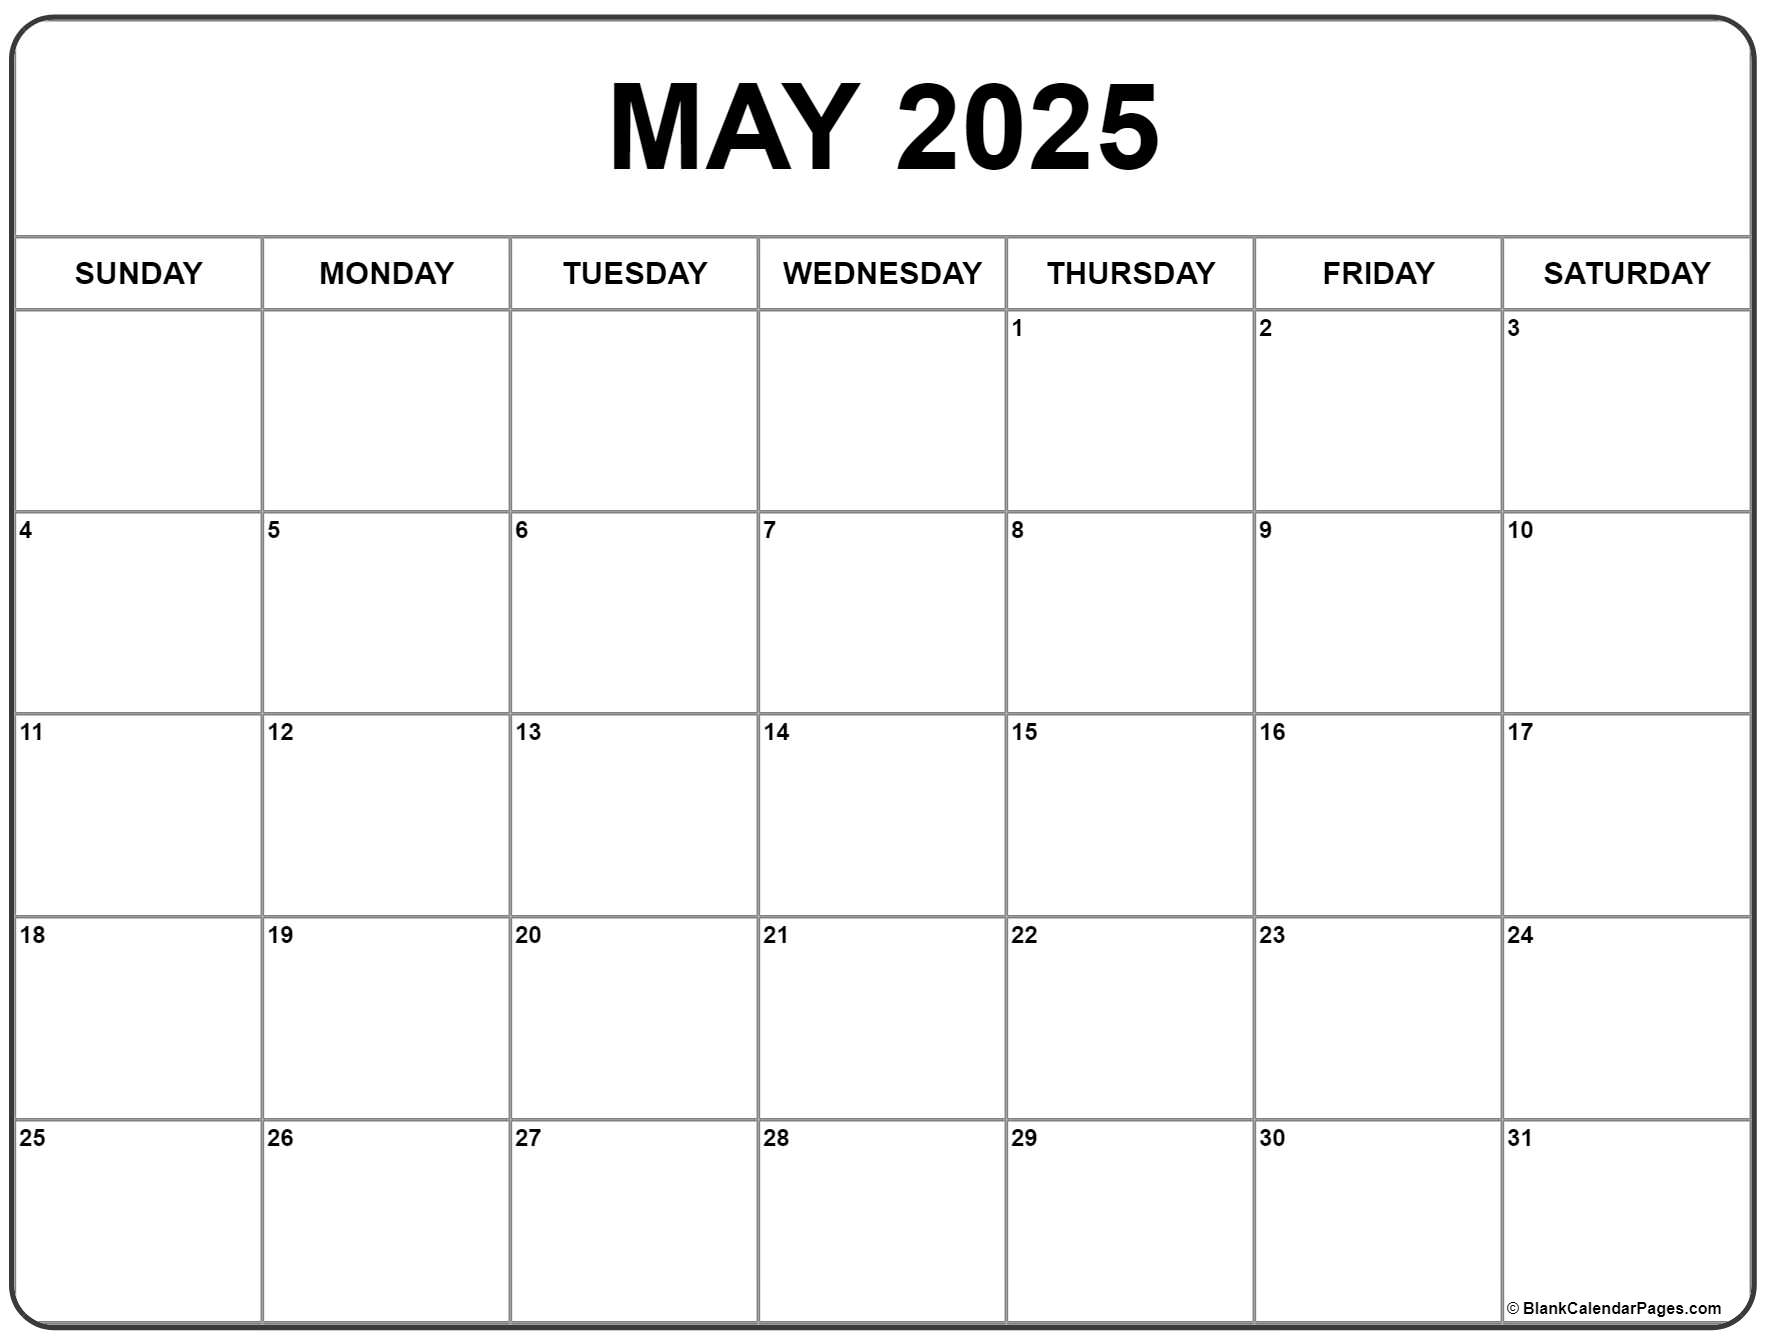 Wiki Calendar May 2025 